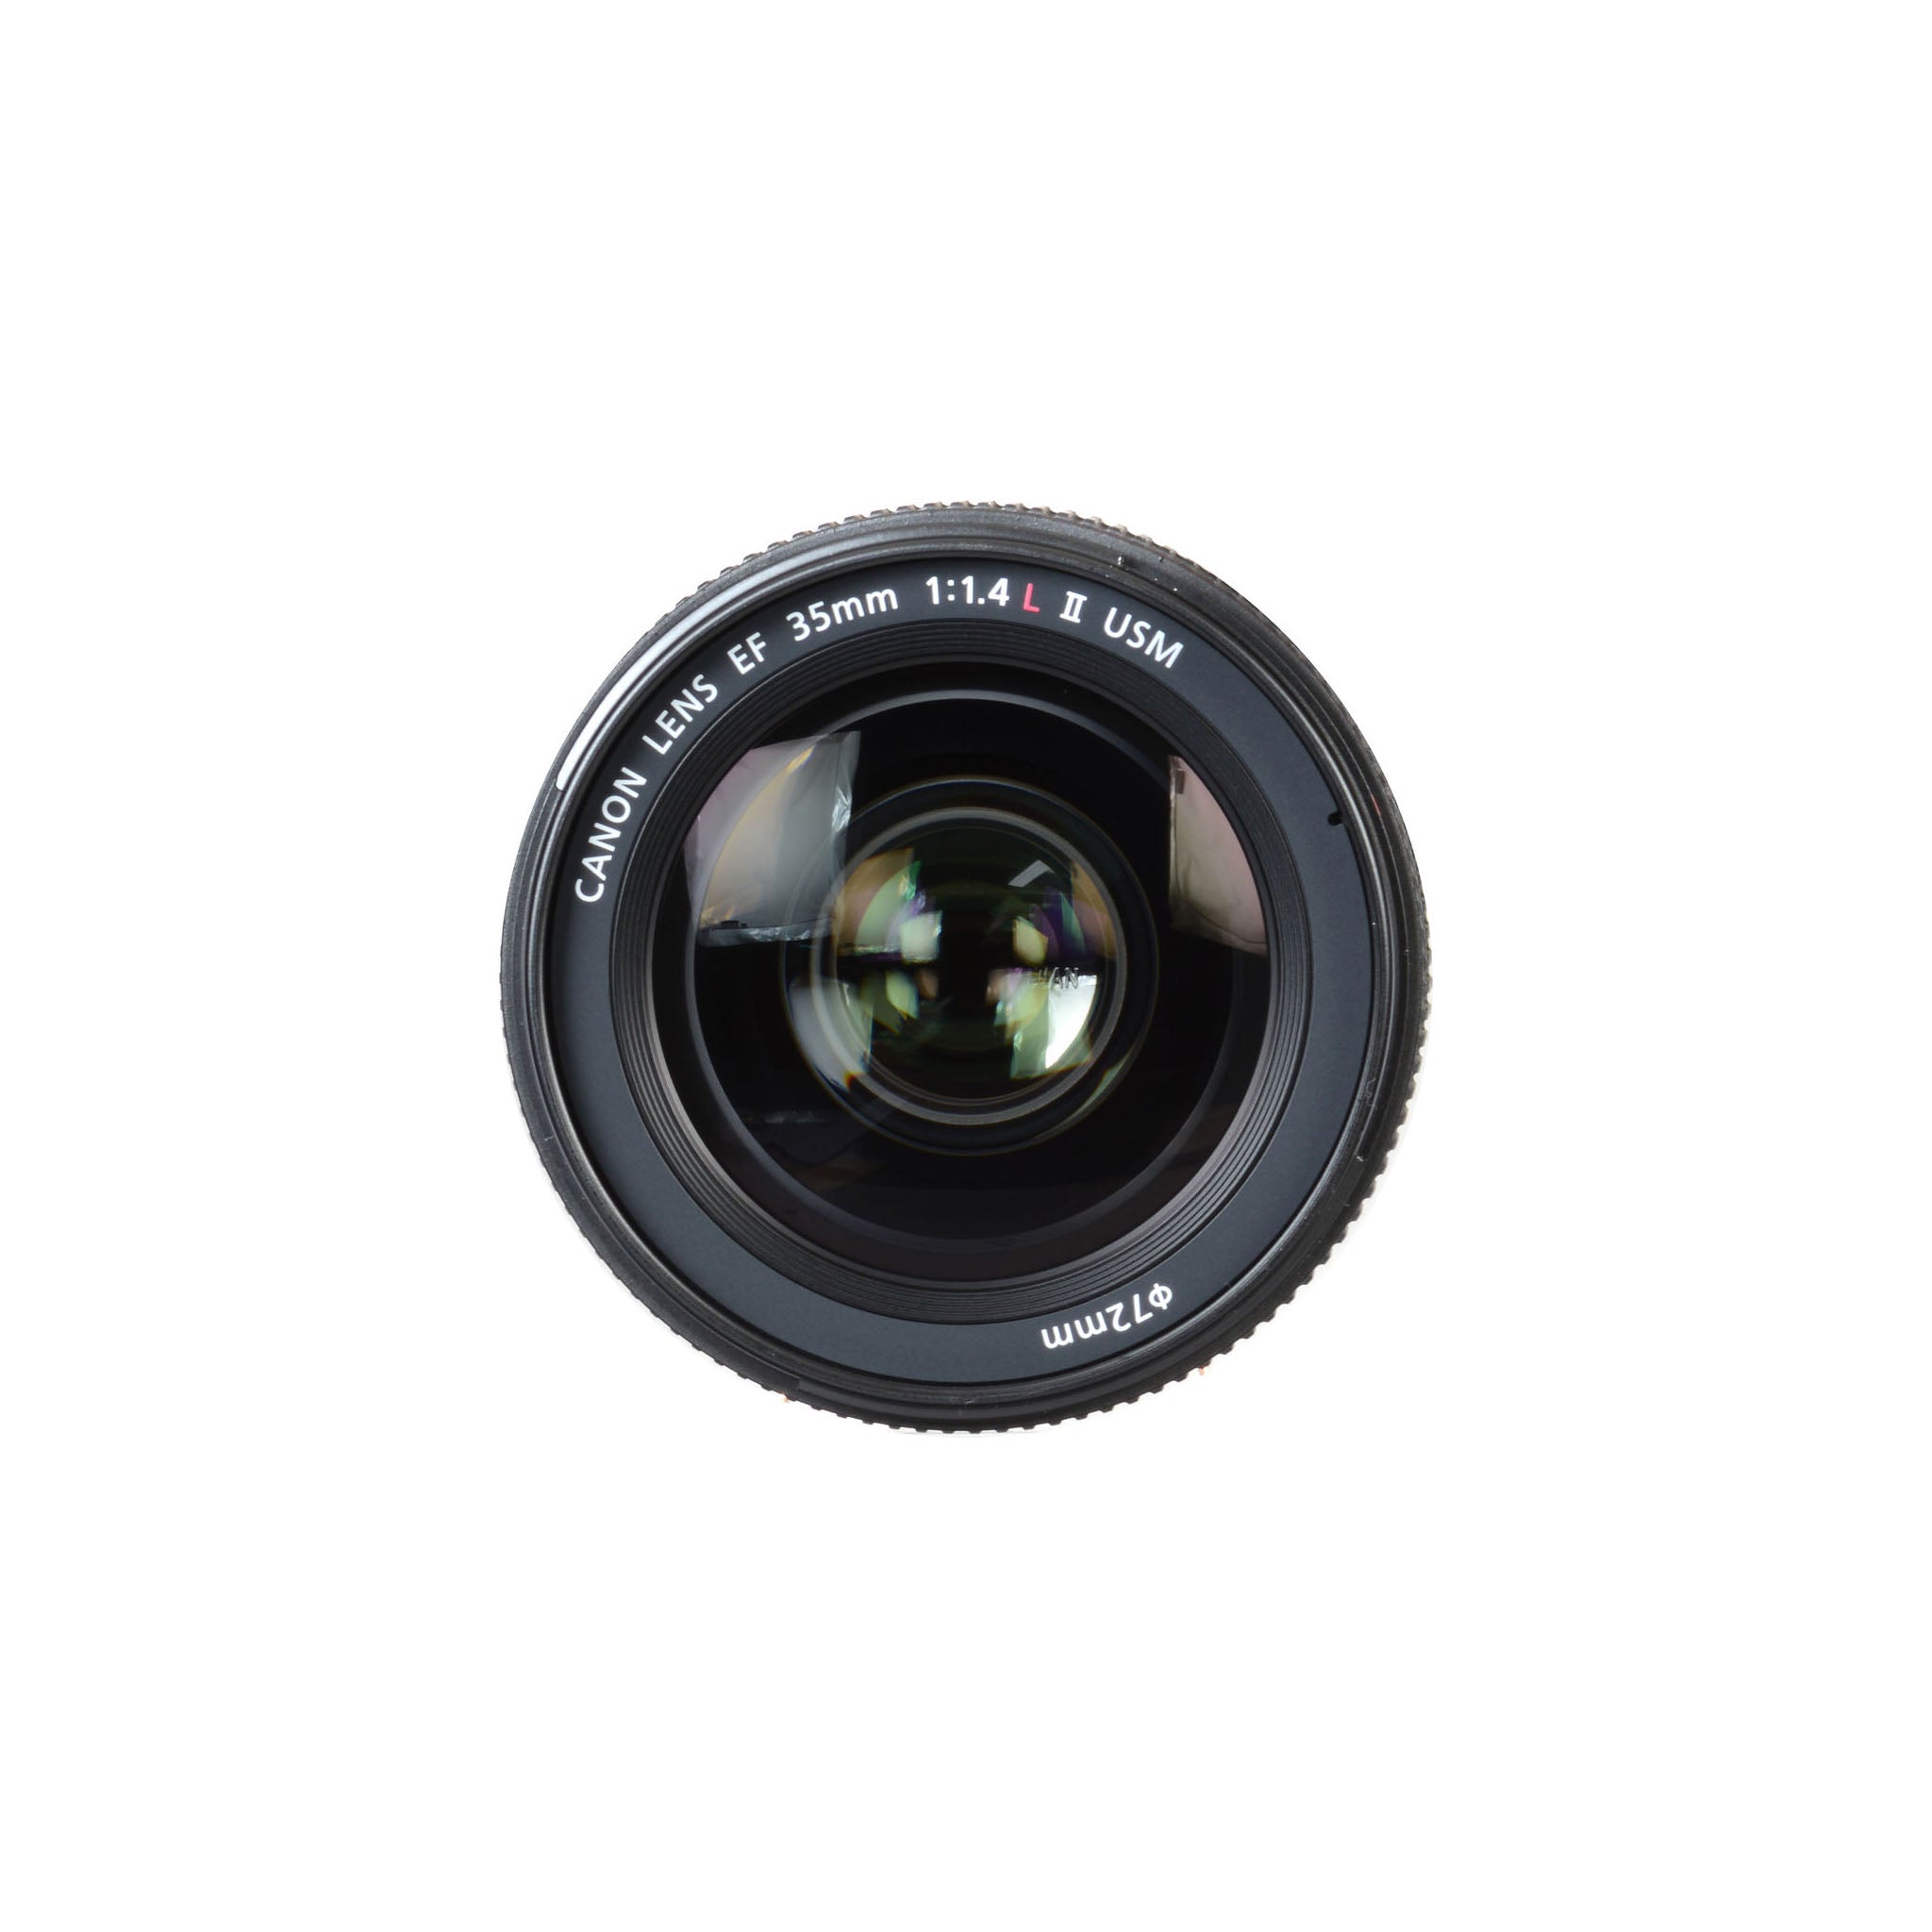 Canon EF 35mm F1.4L USM Lens